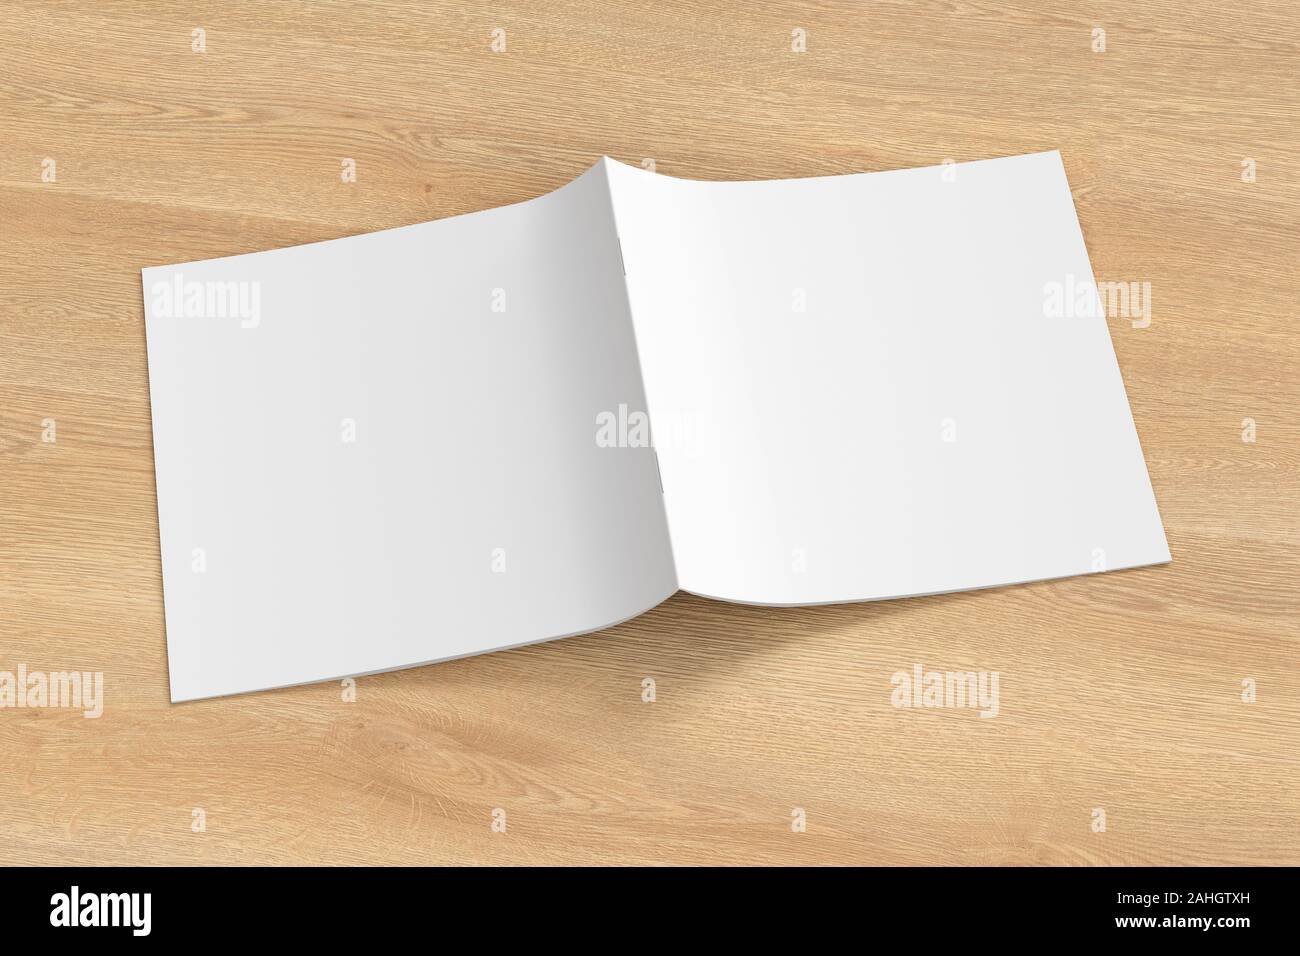 Quadratische Broschüre oder Booklet cover Mock up auf Holz- Hintergrund. Broschüre ist offen und mit der Oberseite nach unten. Mit Beschneidungspfad um Broschüre isoliert. Seite vie Stockfoto